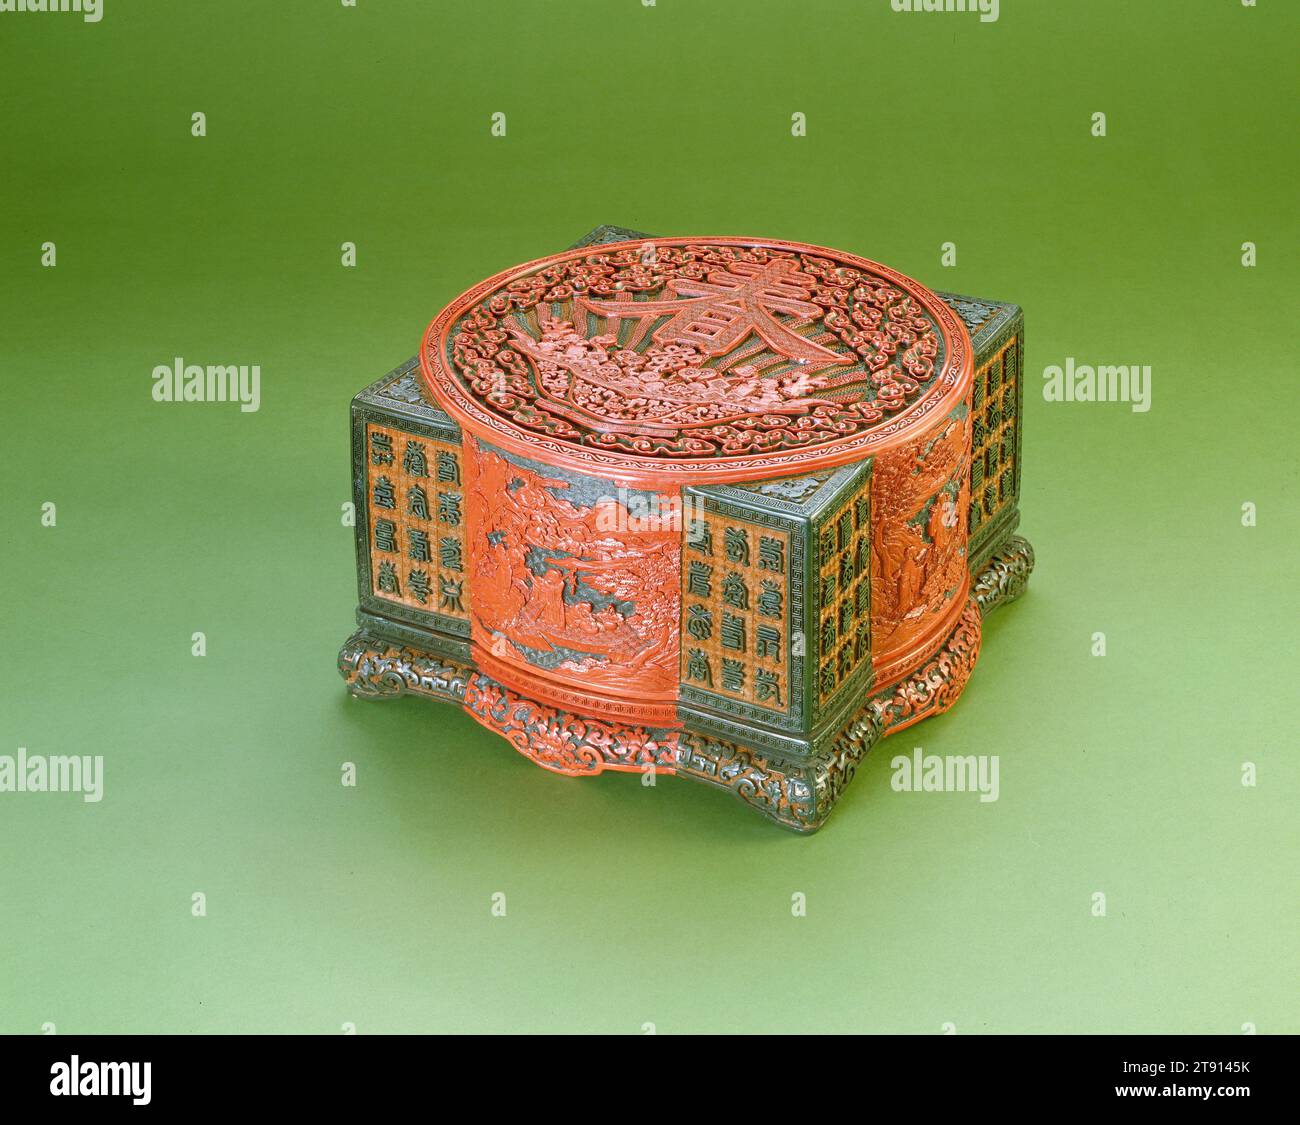 Präsentationsbox und Cover in Tsung-Form, 1736-1795, 6 1/4 x 9 5/8 x 9 5/8 Zoll (15,88 x 24,45 x 24,45 cm), geschnitzter dreifarbiger Lack, China, 18. Jahrhundert, geschnitzter Lack ist ein anspruchsvolles Medium, bei dem durch aufeinanderfolgende Lackschichten, die aus dem saft des Sumakbaums hergestellt werden, eine beträchtliche Dicke aufgebaut wurde. Durch das Wechseln der Farben in diesem langwierigen Schichtprozess und das anschließende Abschneiden auf eine bestimmte Tiefe, um die gewünschte Farbe freizugeben, konnten Handwerker mehrfarbige Szenen erstellen. Oben in dieser Box steht der glückverheißende Charakter für den Frühling Stockfoto